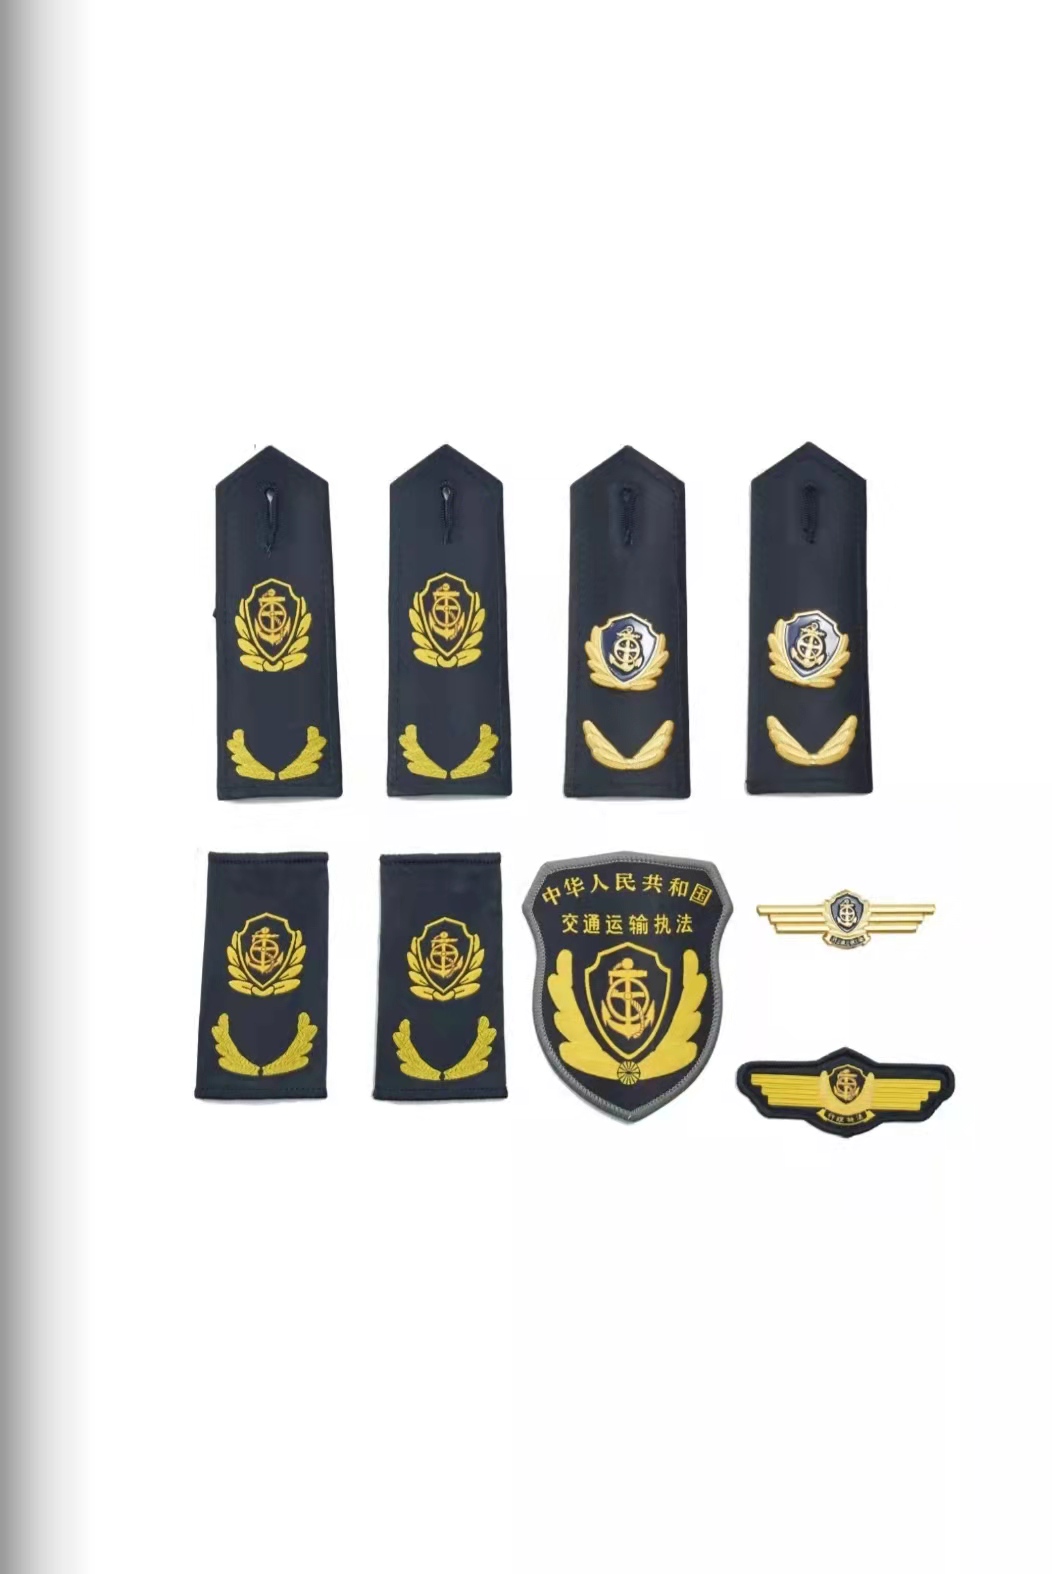 西城六部门统一交通运输执法服装标志